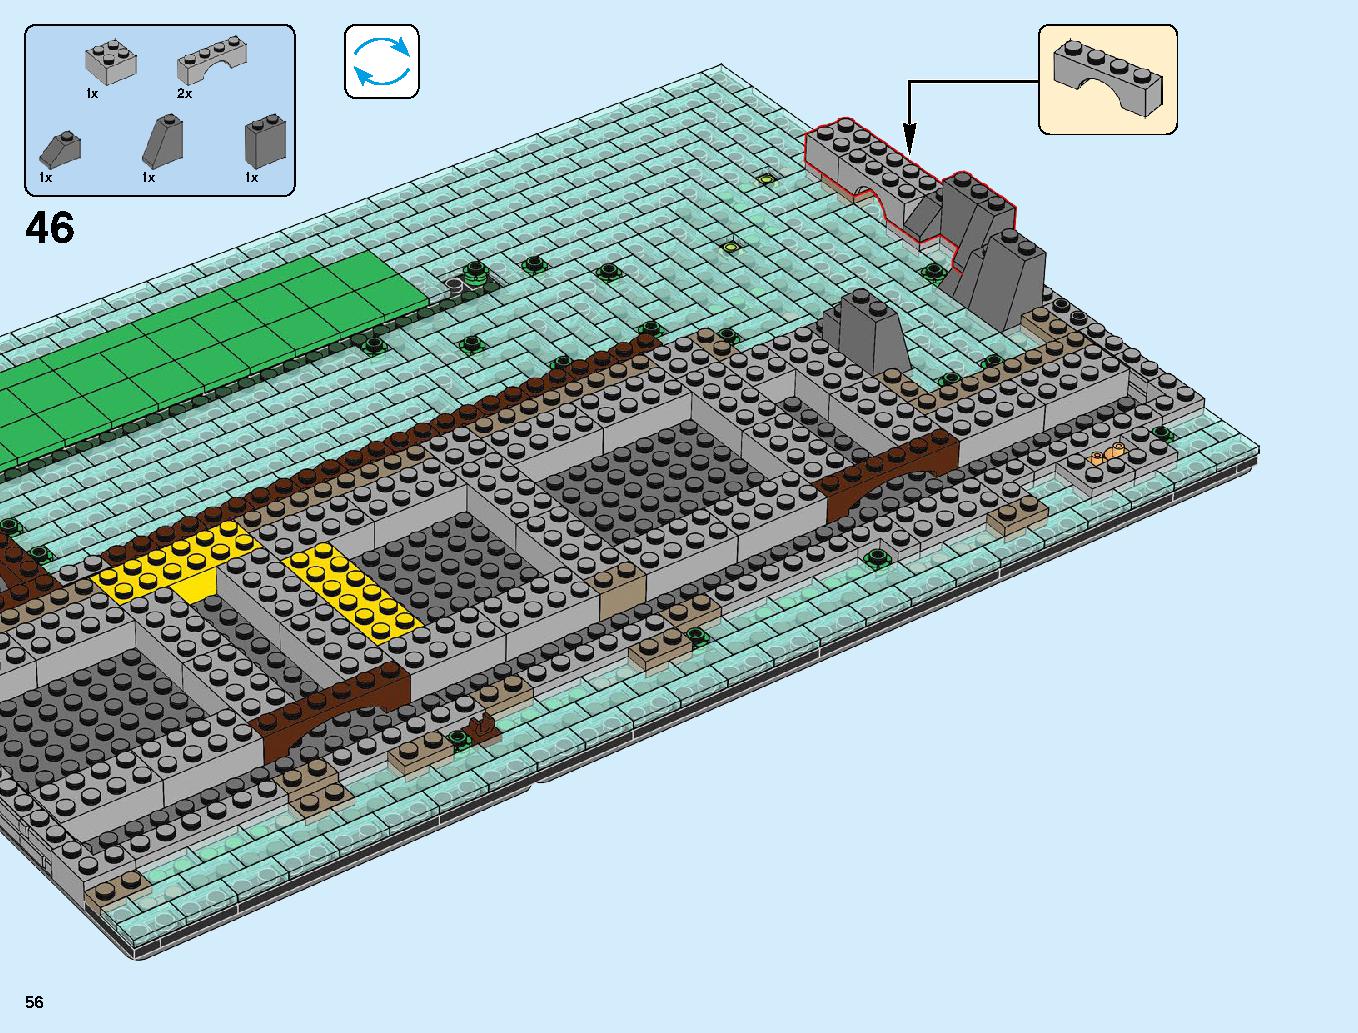 ニンジャゴーシティ・ポートパーク 70657 レゴの商品情報 レゴの説明書・組立方法 56 page